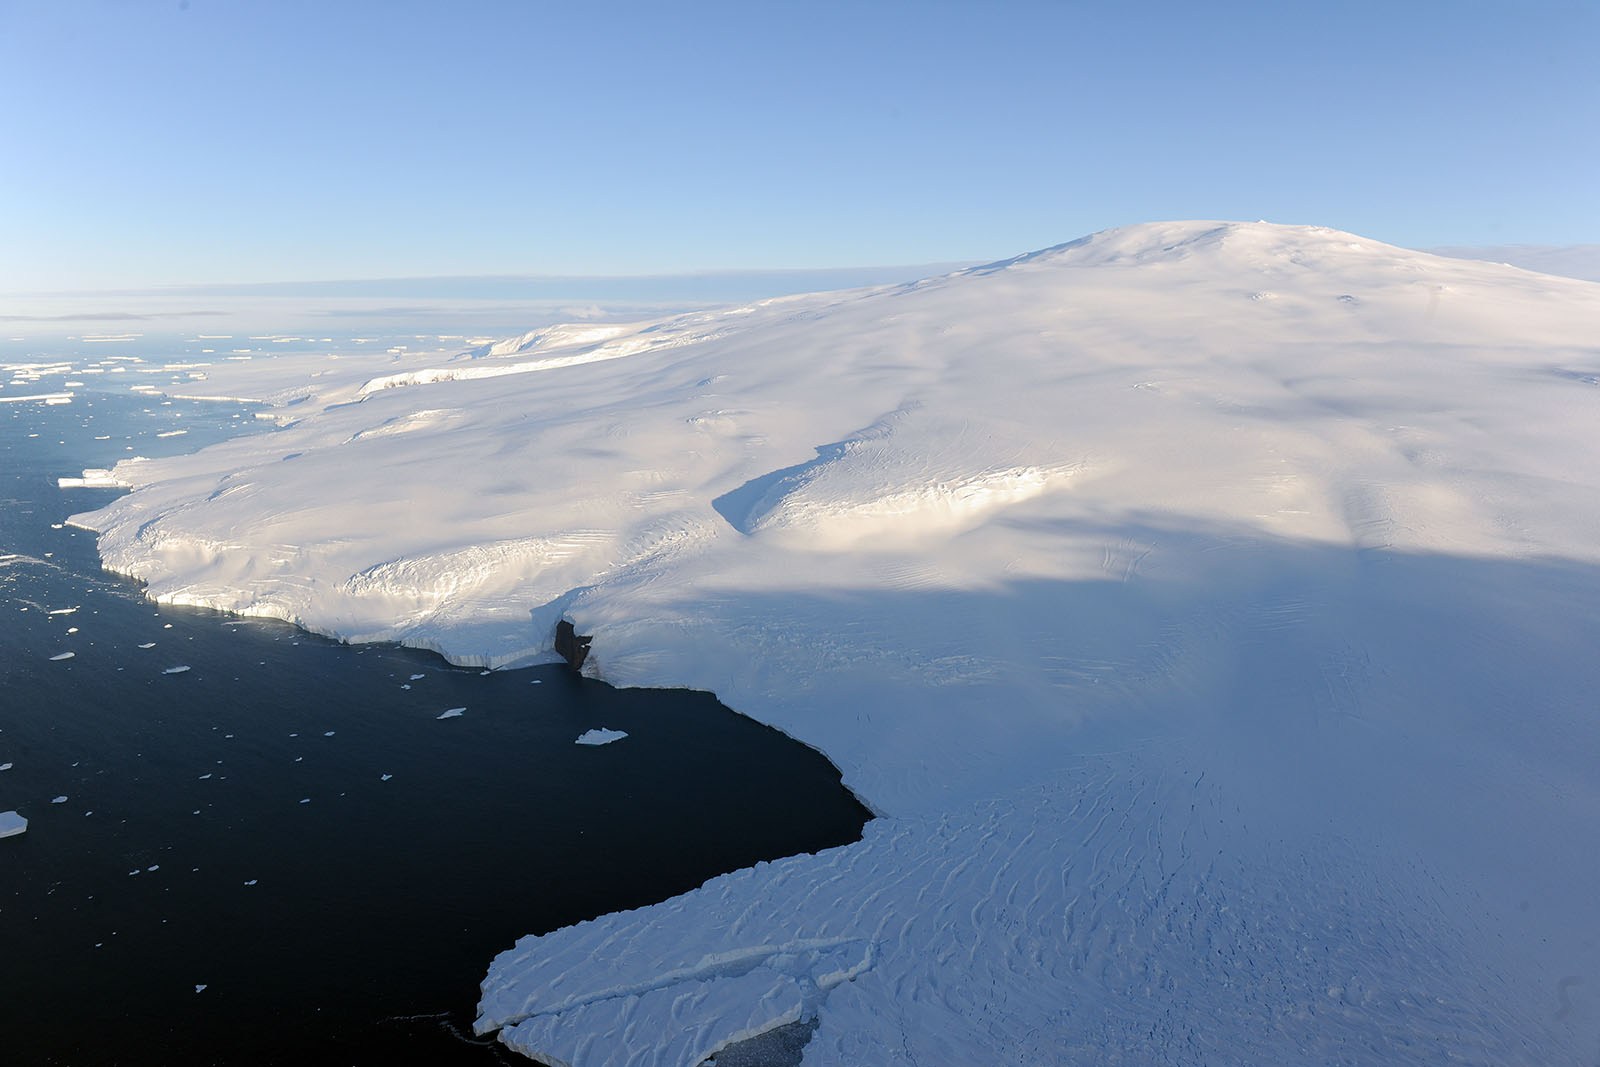 Mount-siple-volcano-aerial.jpg